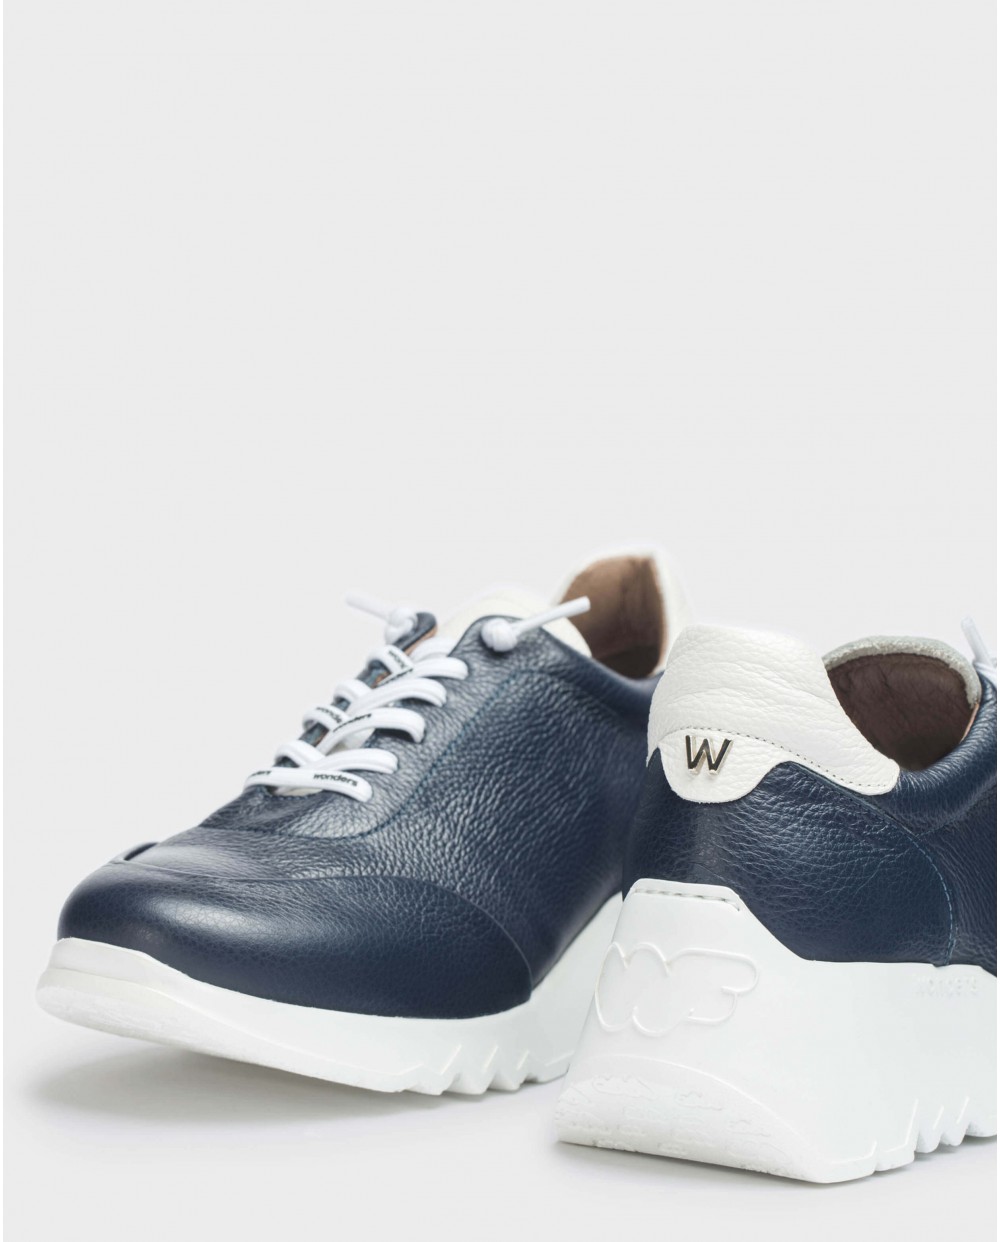 Wonders-Sneakers-Blue Mint II sneakers